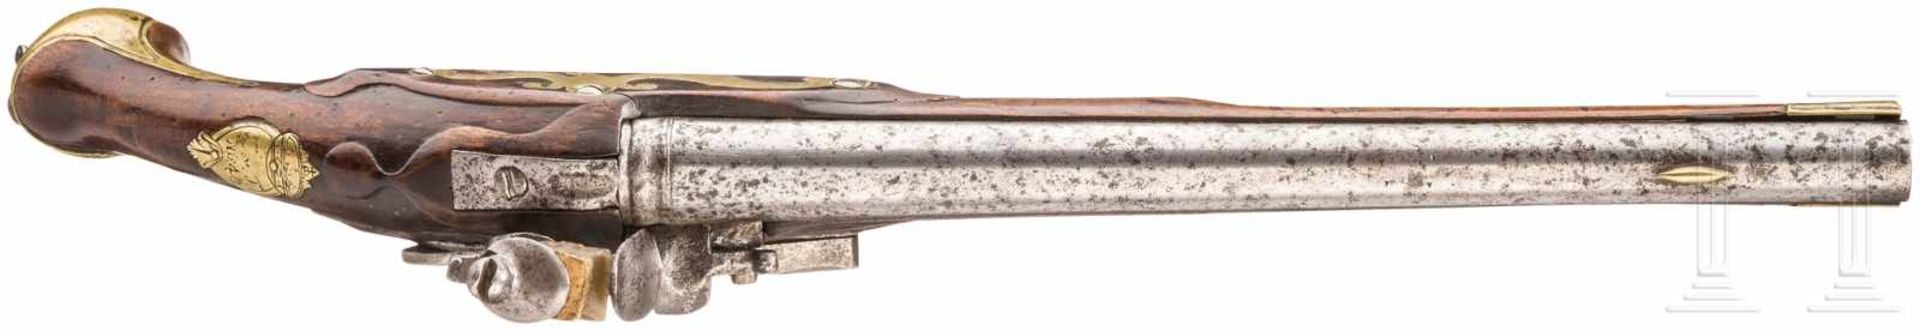 Steinschlosspistole M 1742 für das Chevaulegerregiment Graf RutowskiGlatter Lauf im Kaliber 19 mm - Bild 3 aus 3